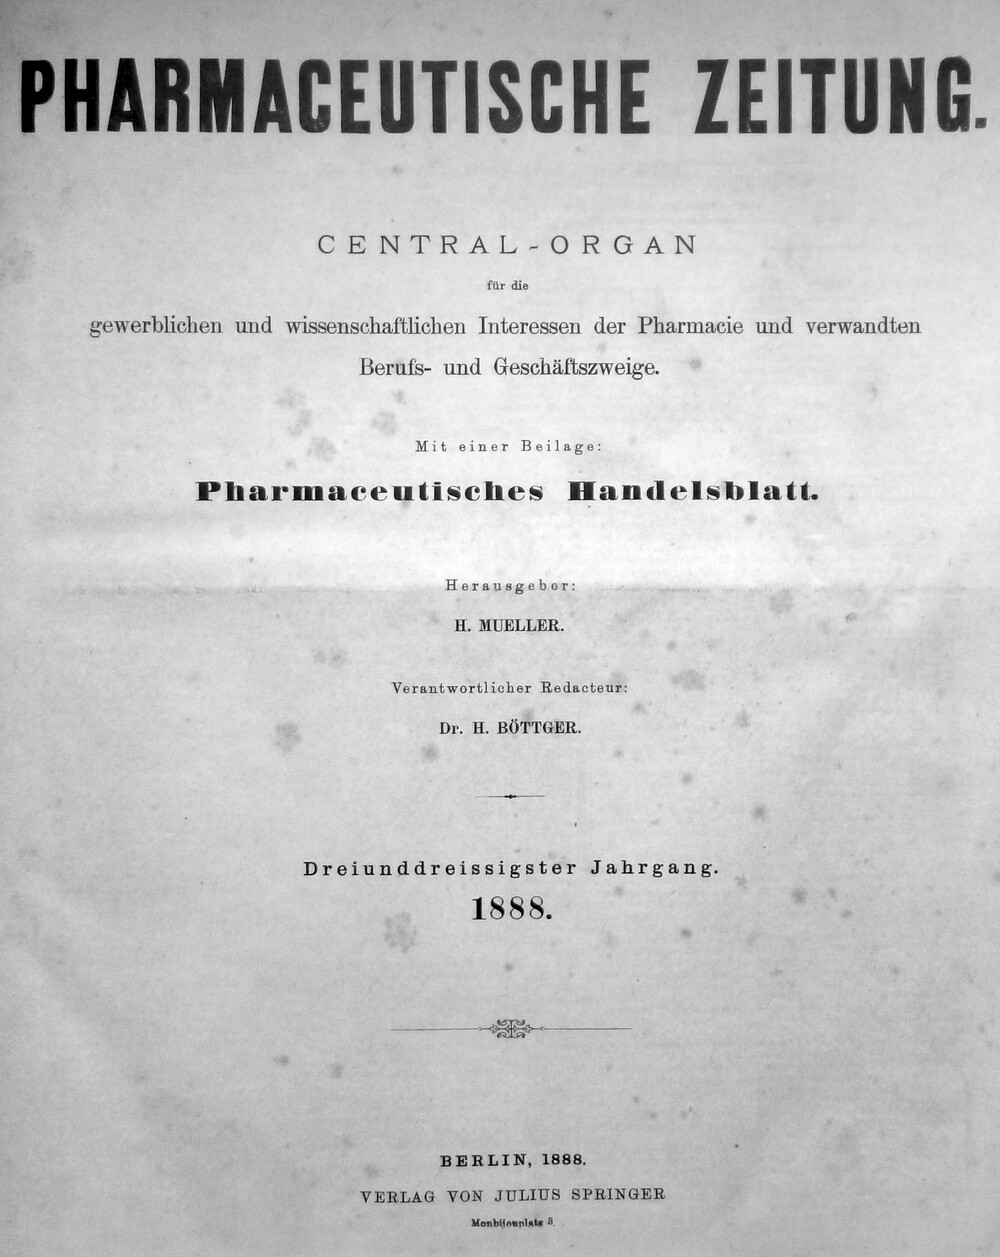 Pharmaceutische Zeitung 1888 (Kulturverein Guntersblum CC BY-NC-SA)